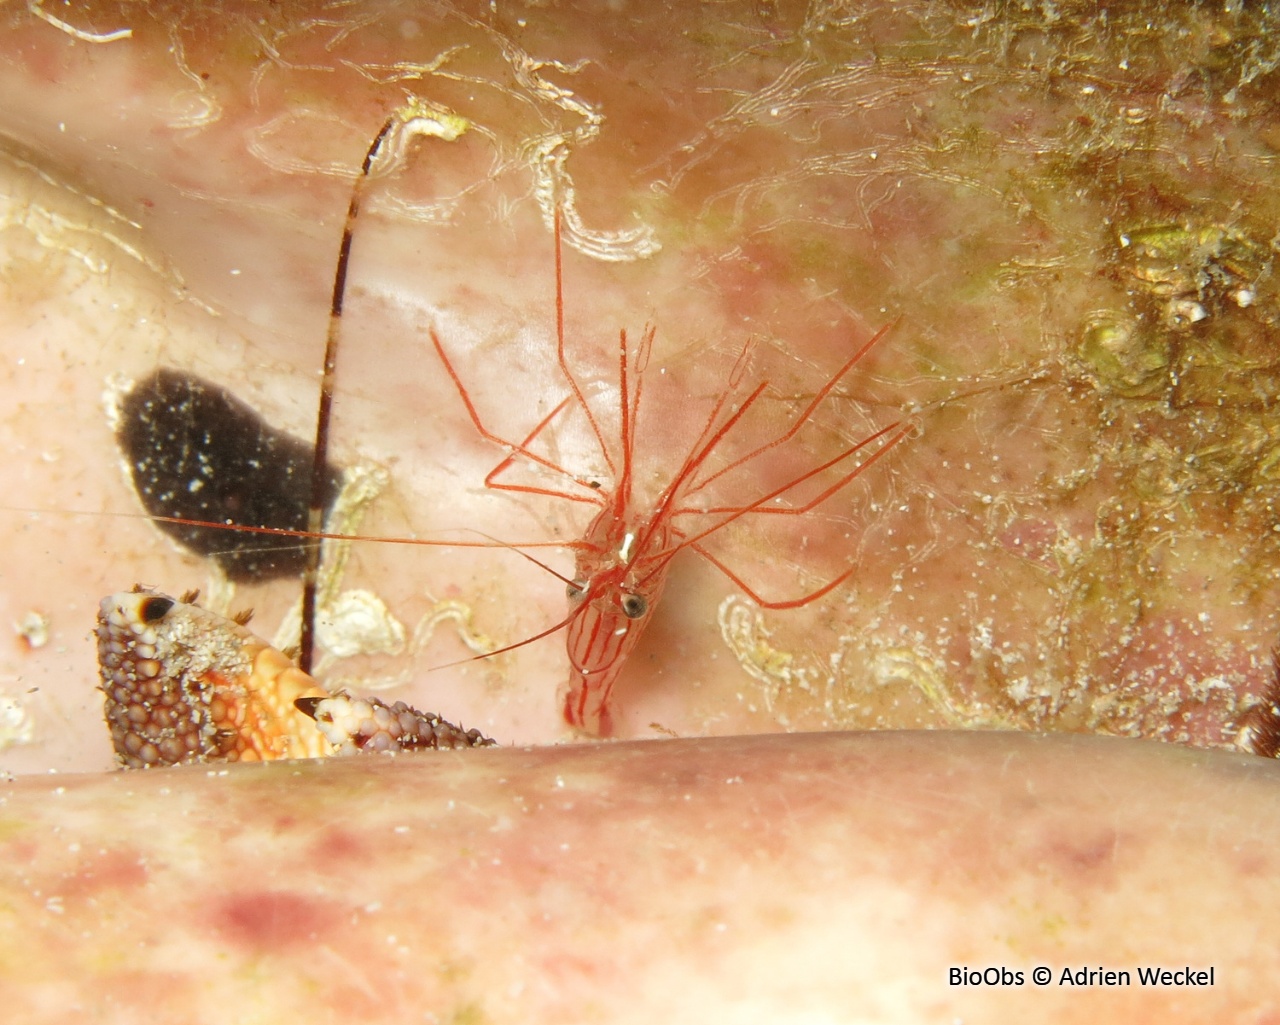 Crevette des éponges tubulaires - Lysmata pederseni - Adrien Weckel - BioObs